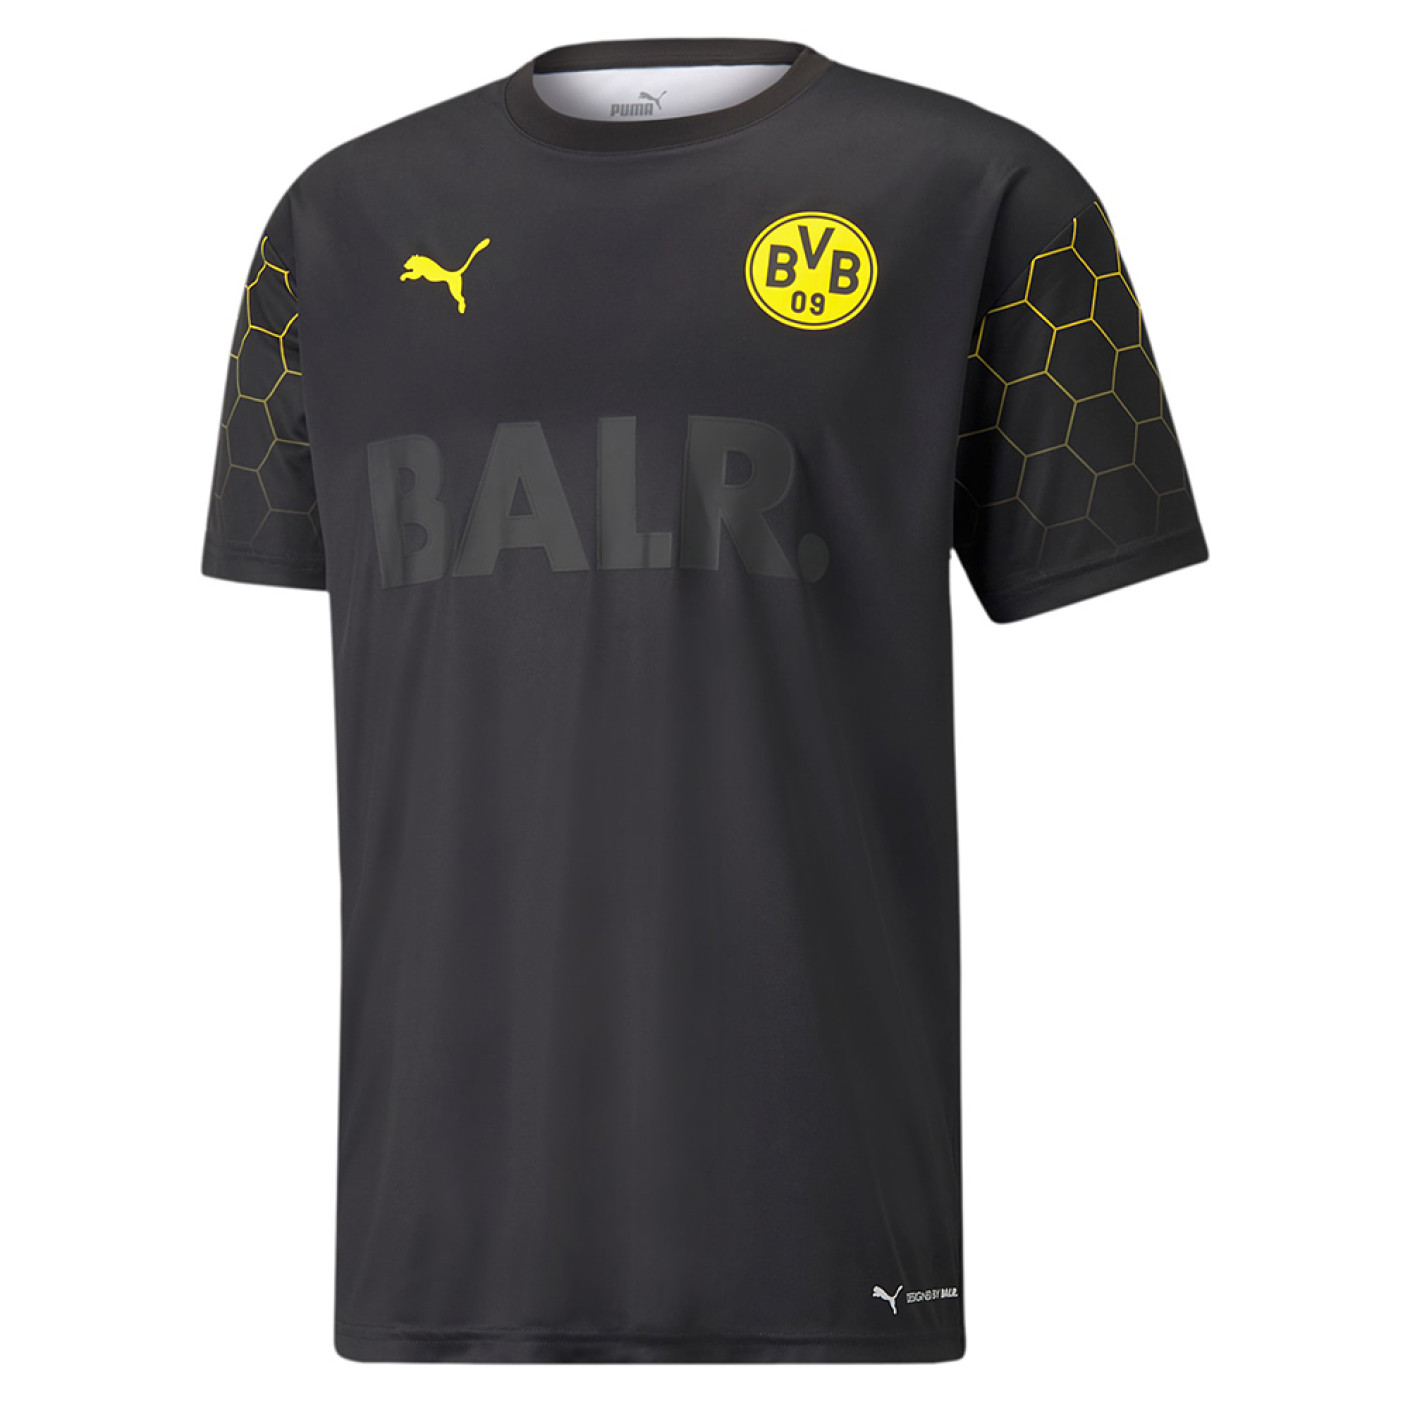 PUMA Borussia Dortmund x BALR Voetbalshirt Zwart Geel